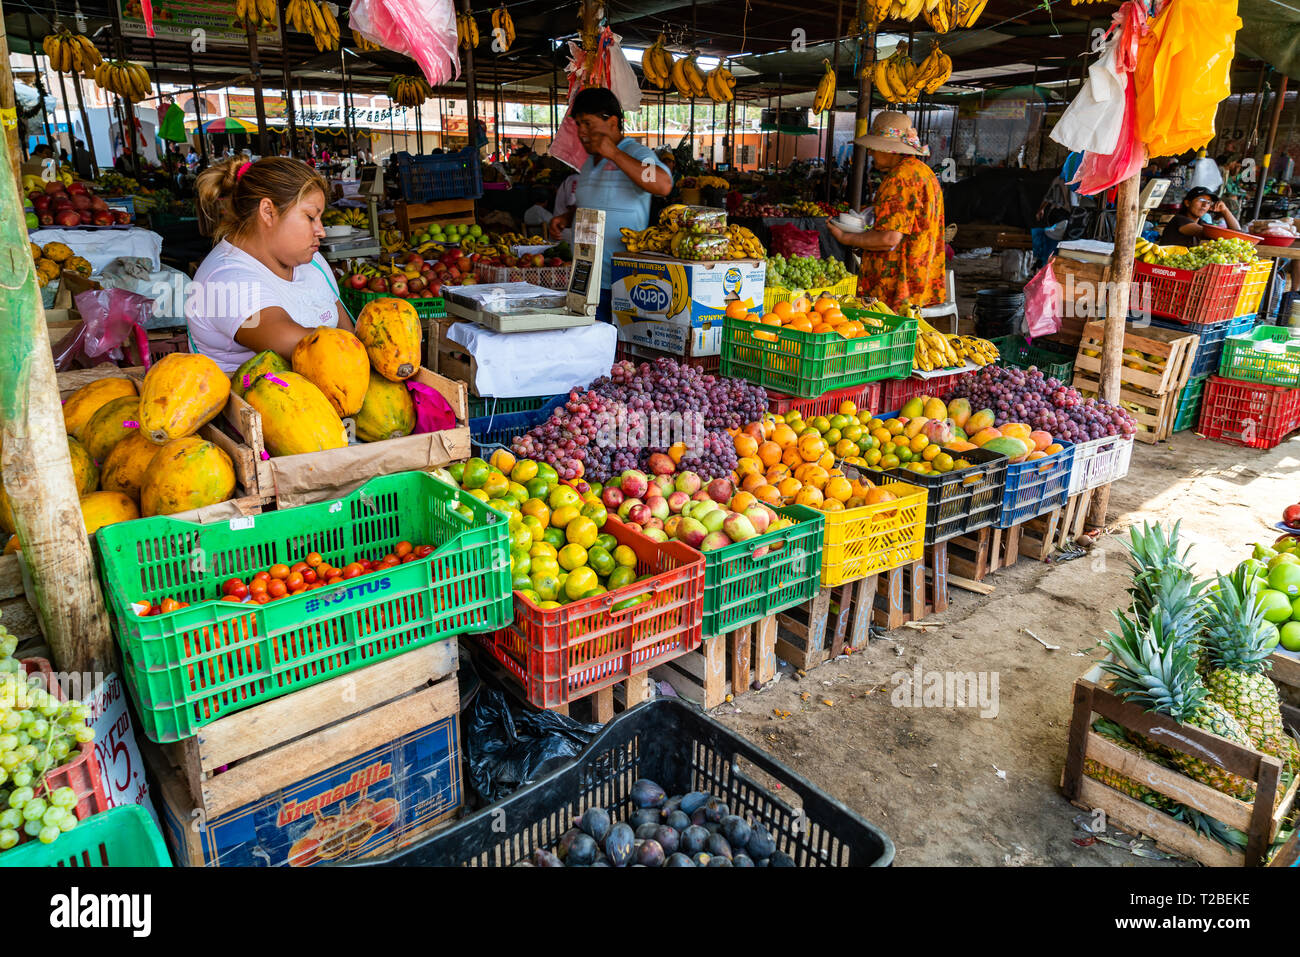 NAZCA, PÉROU - le 25 janvier 2016 : peuple péruvien Vente et achat de fruits dans le marché à Lima, Pérou Banque D'Images